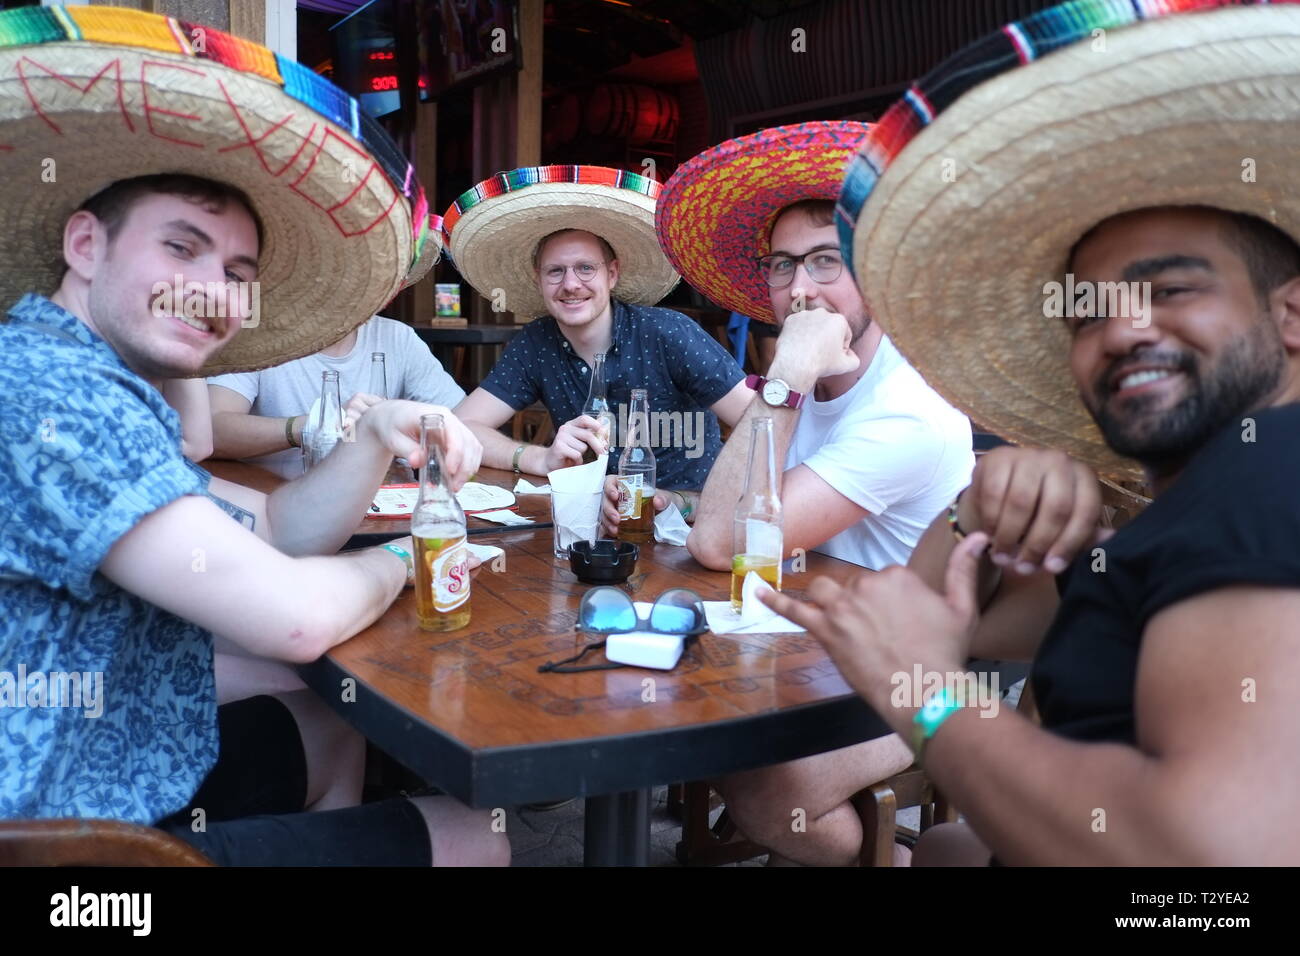 Les touristes américains avec des sombreros mexicains qui pose pour la photo Banque D'Images